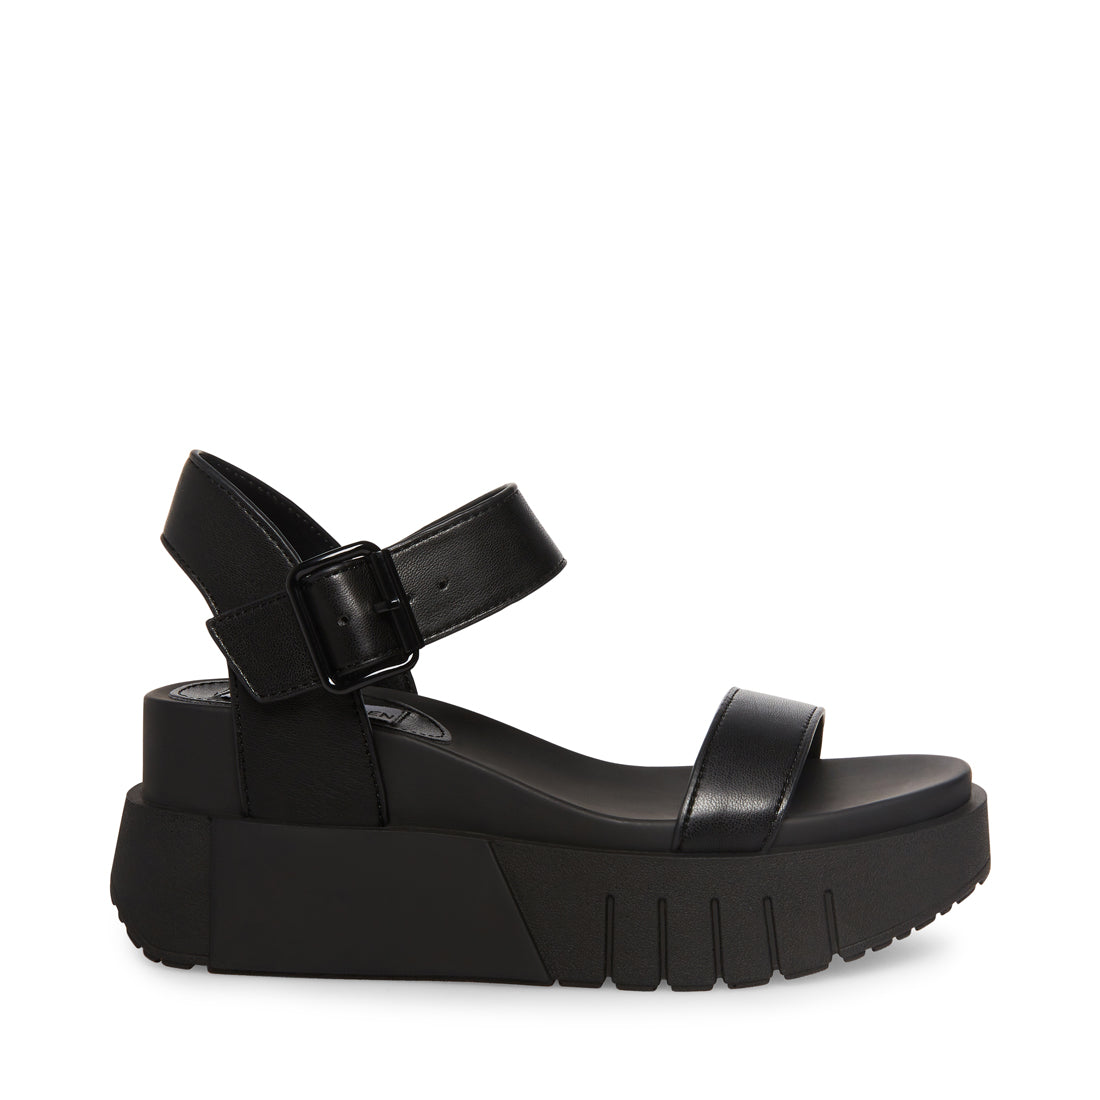 steve madden sandals platform black